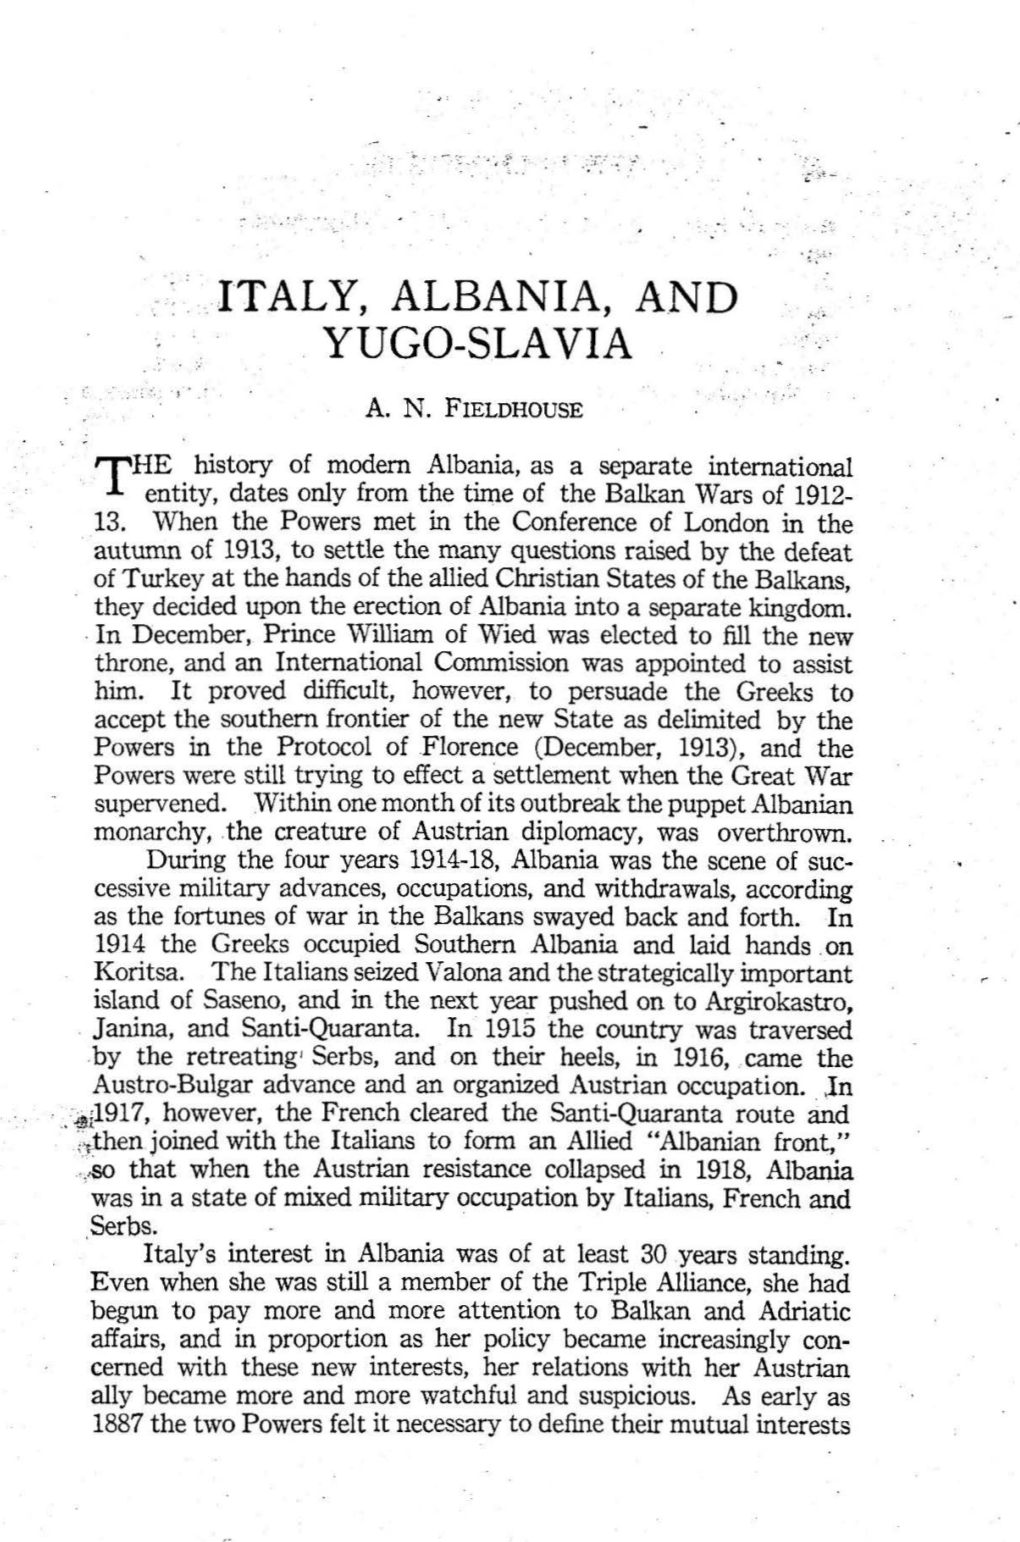 Italy, Albania, A.Nd Yugo-Slavia